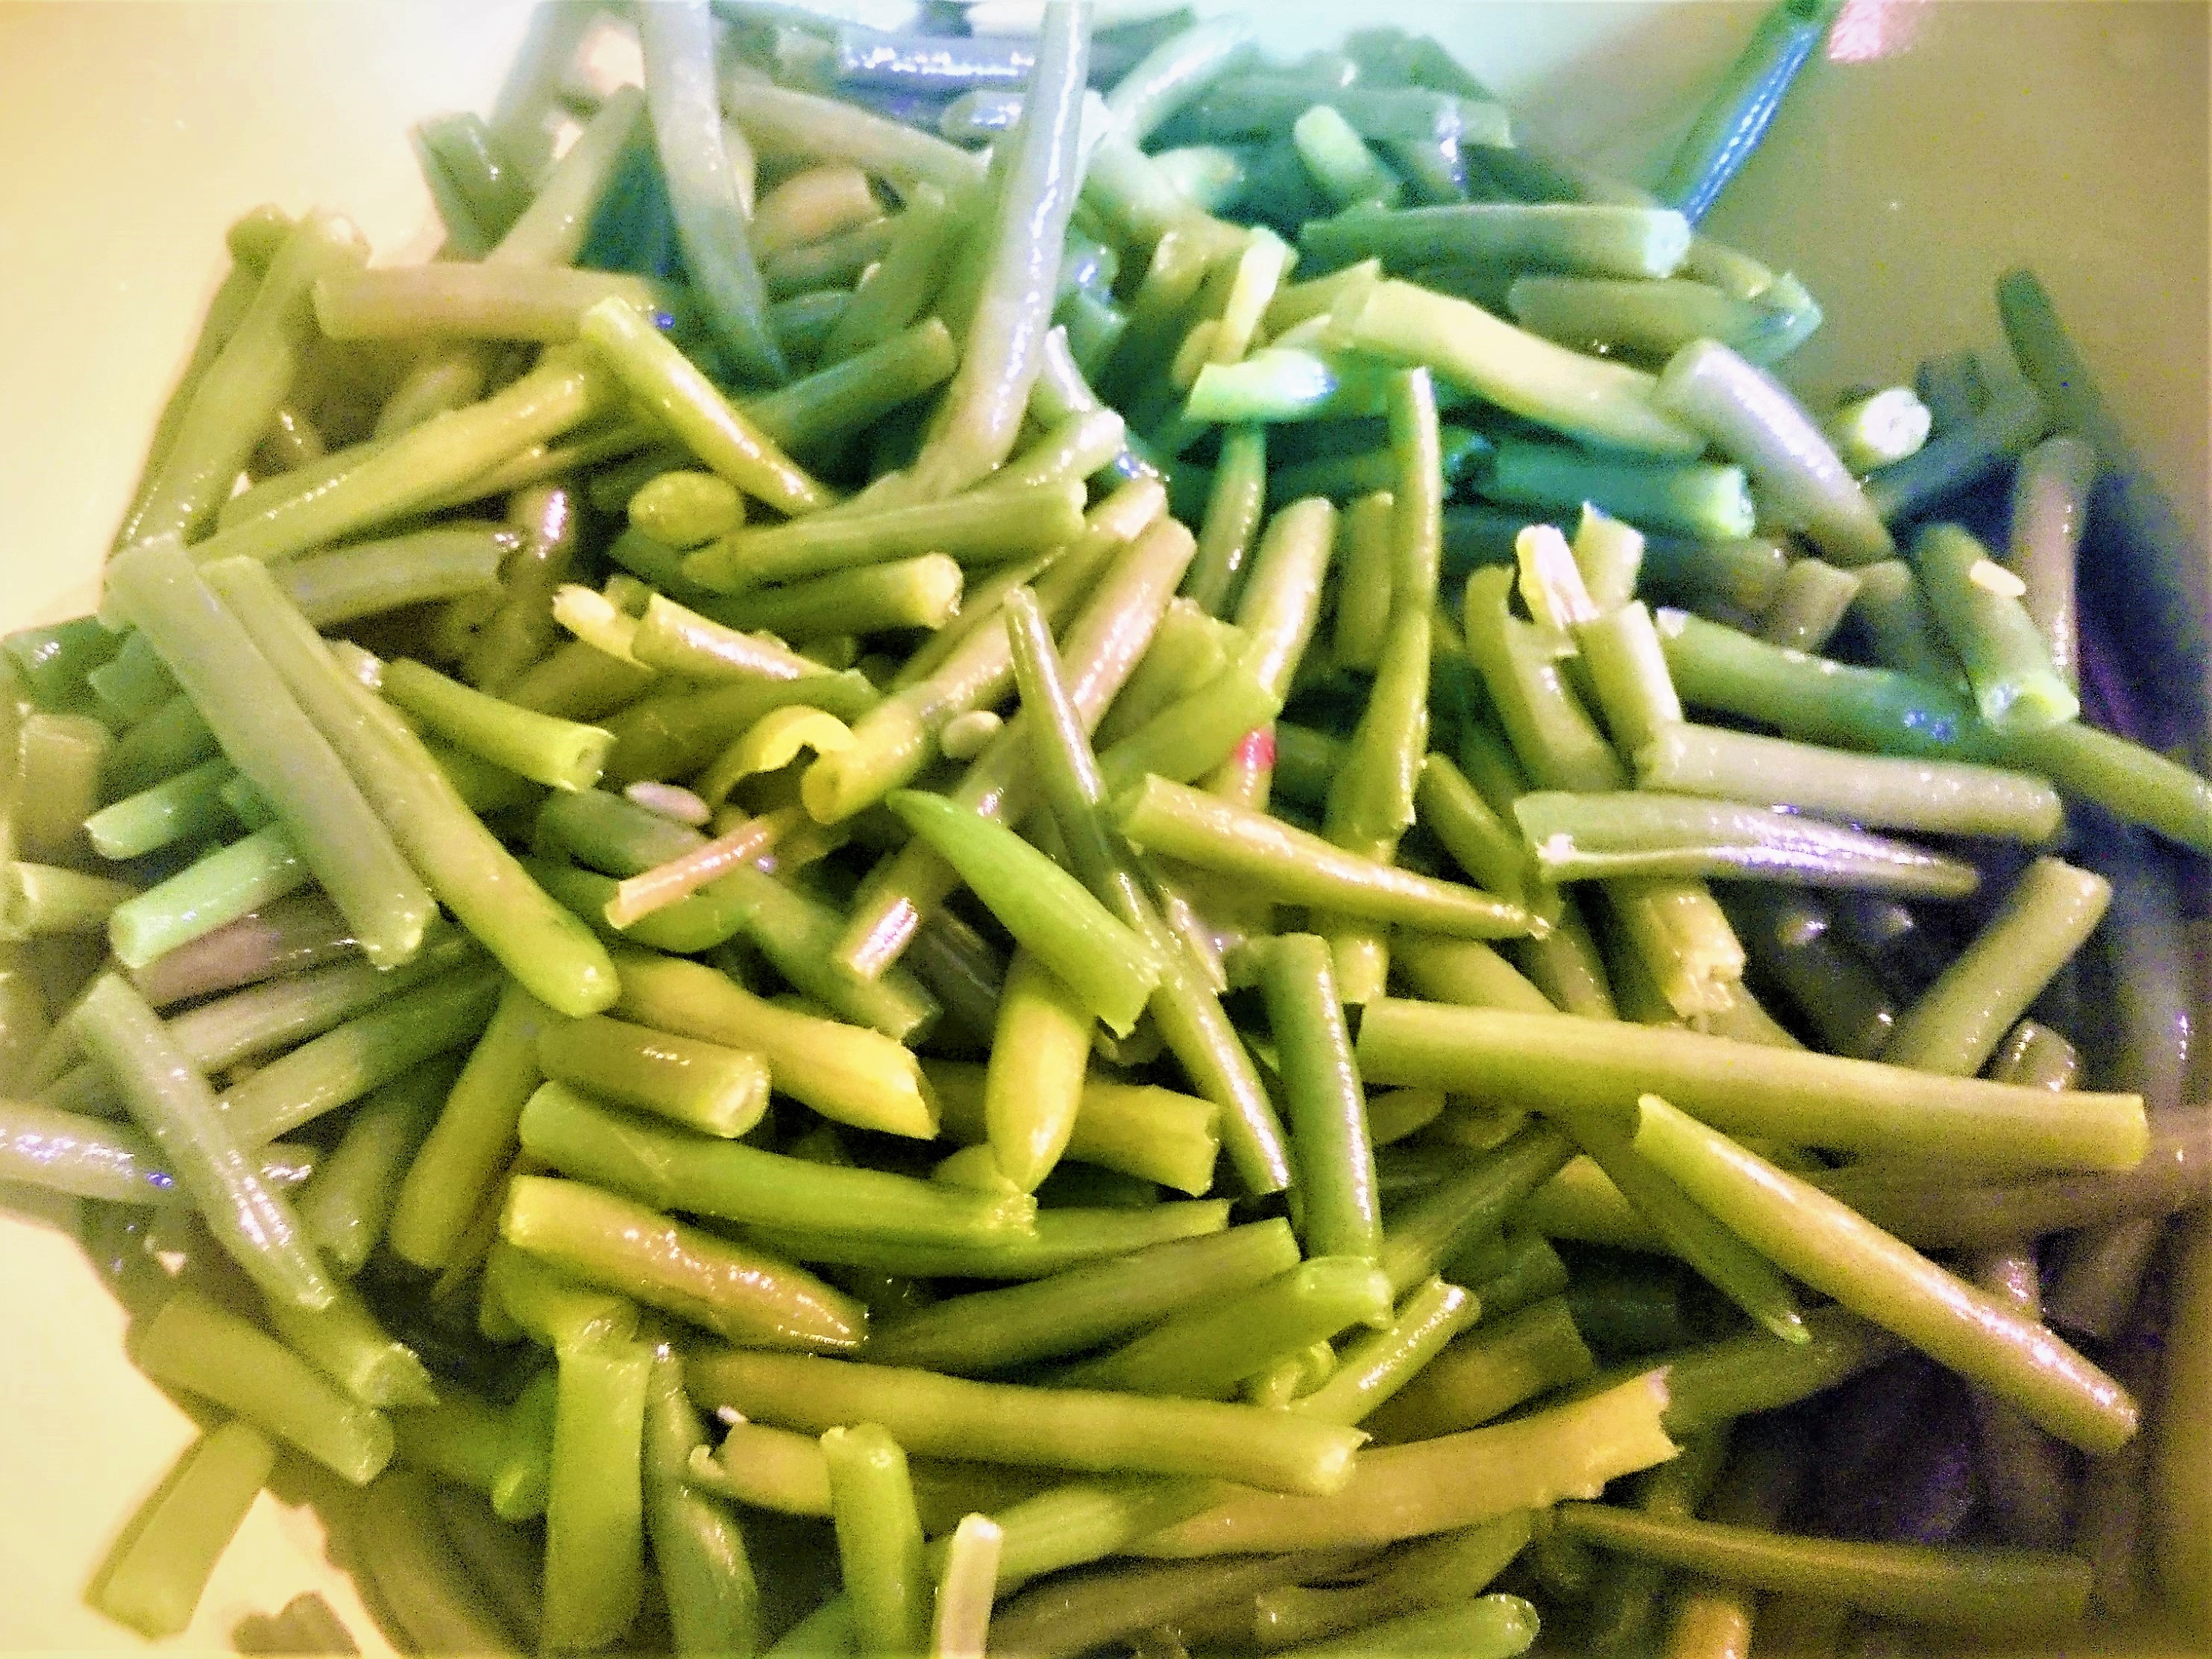 Salata de fasole verde cu piept de pui afumat